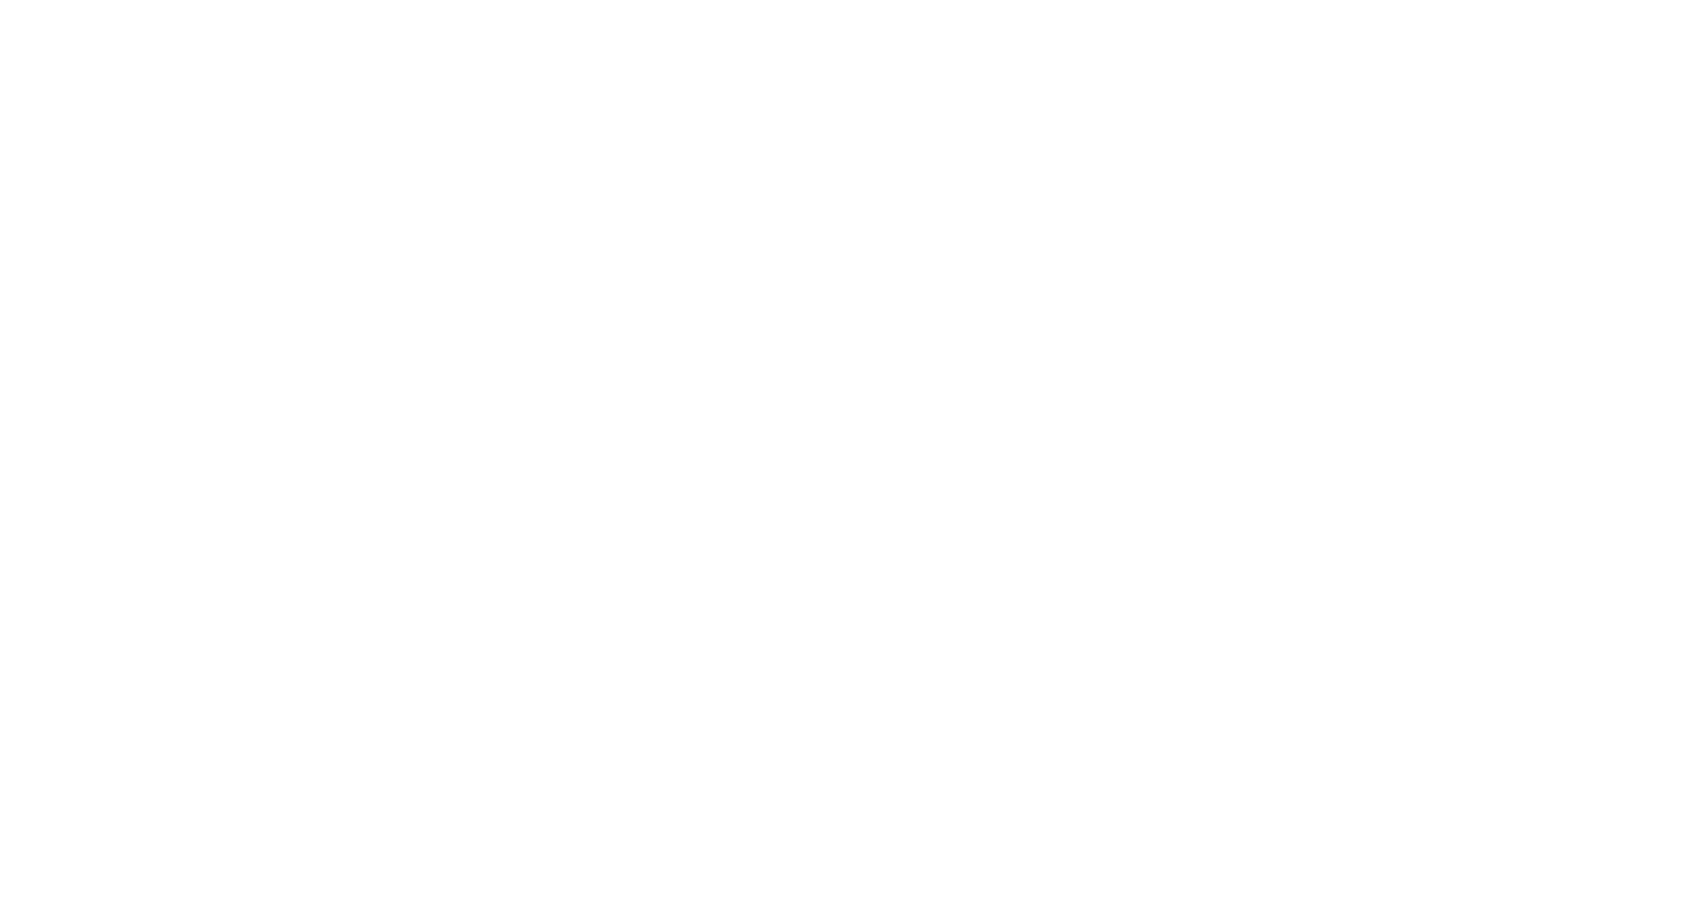 2020.10.1 秋田駅東に循環器科と消化器内科がNEW OPEN!